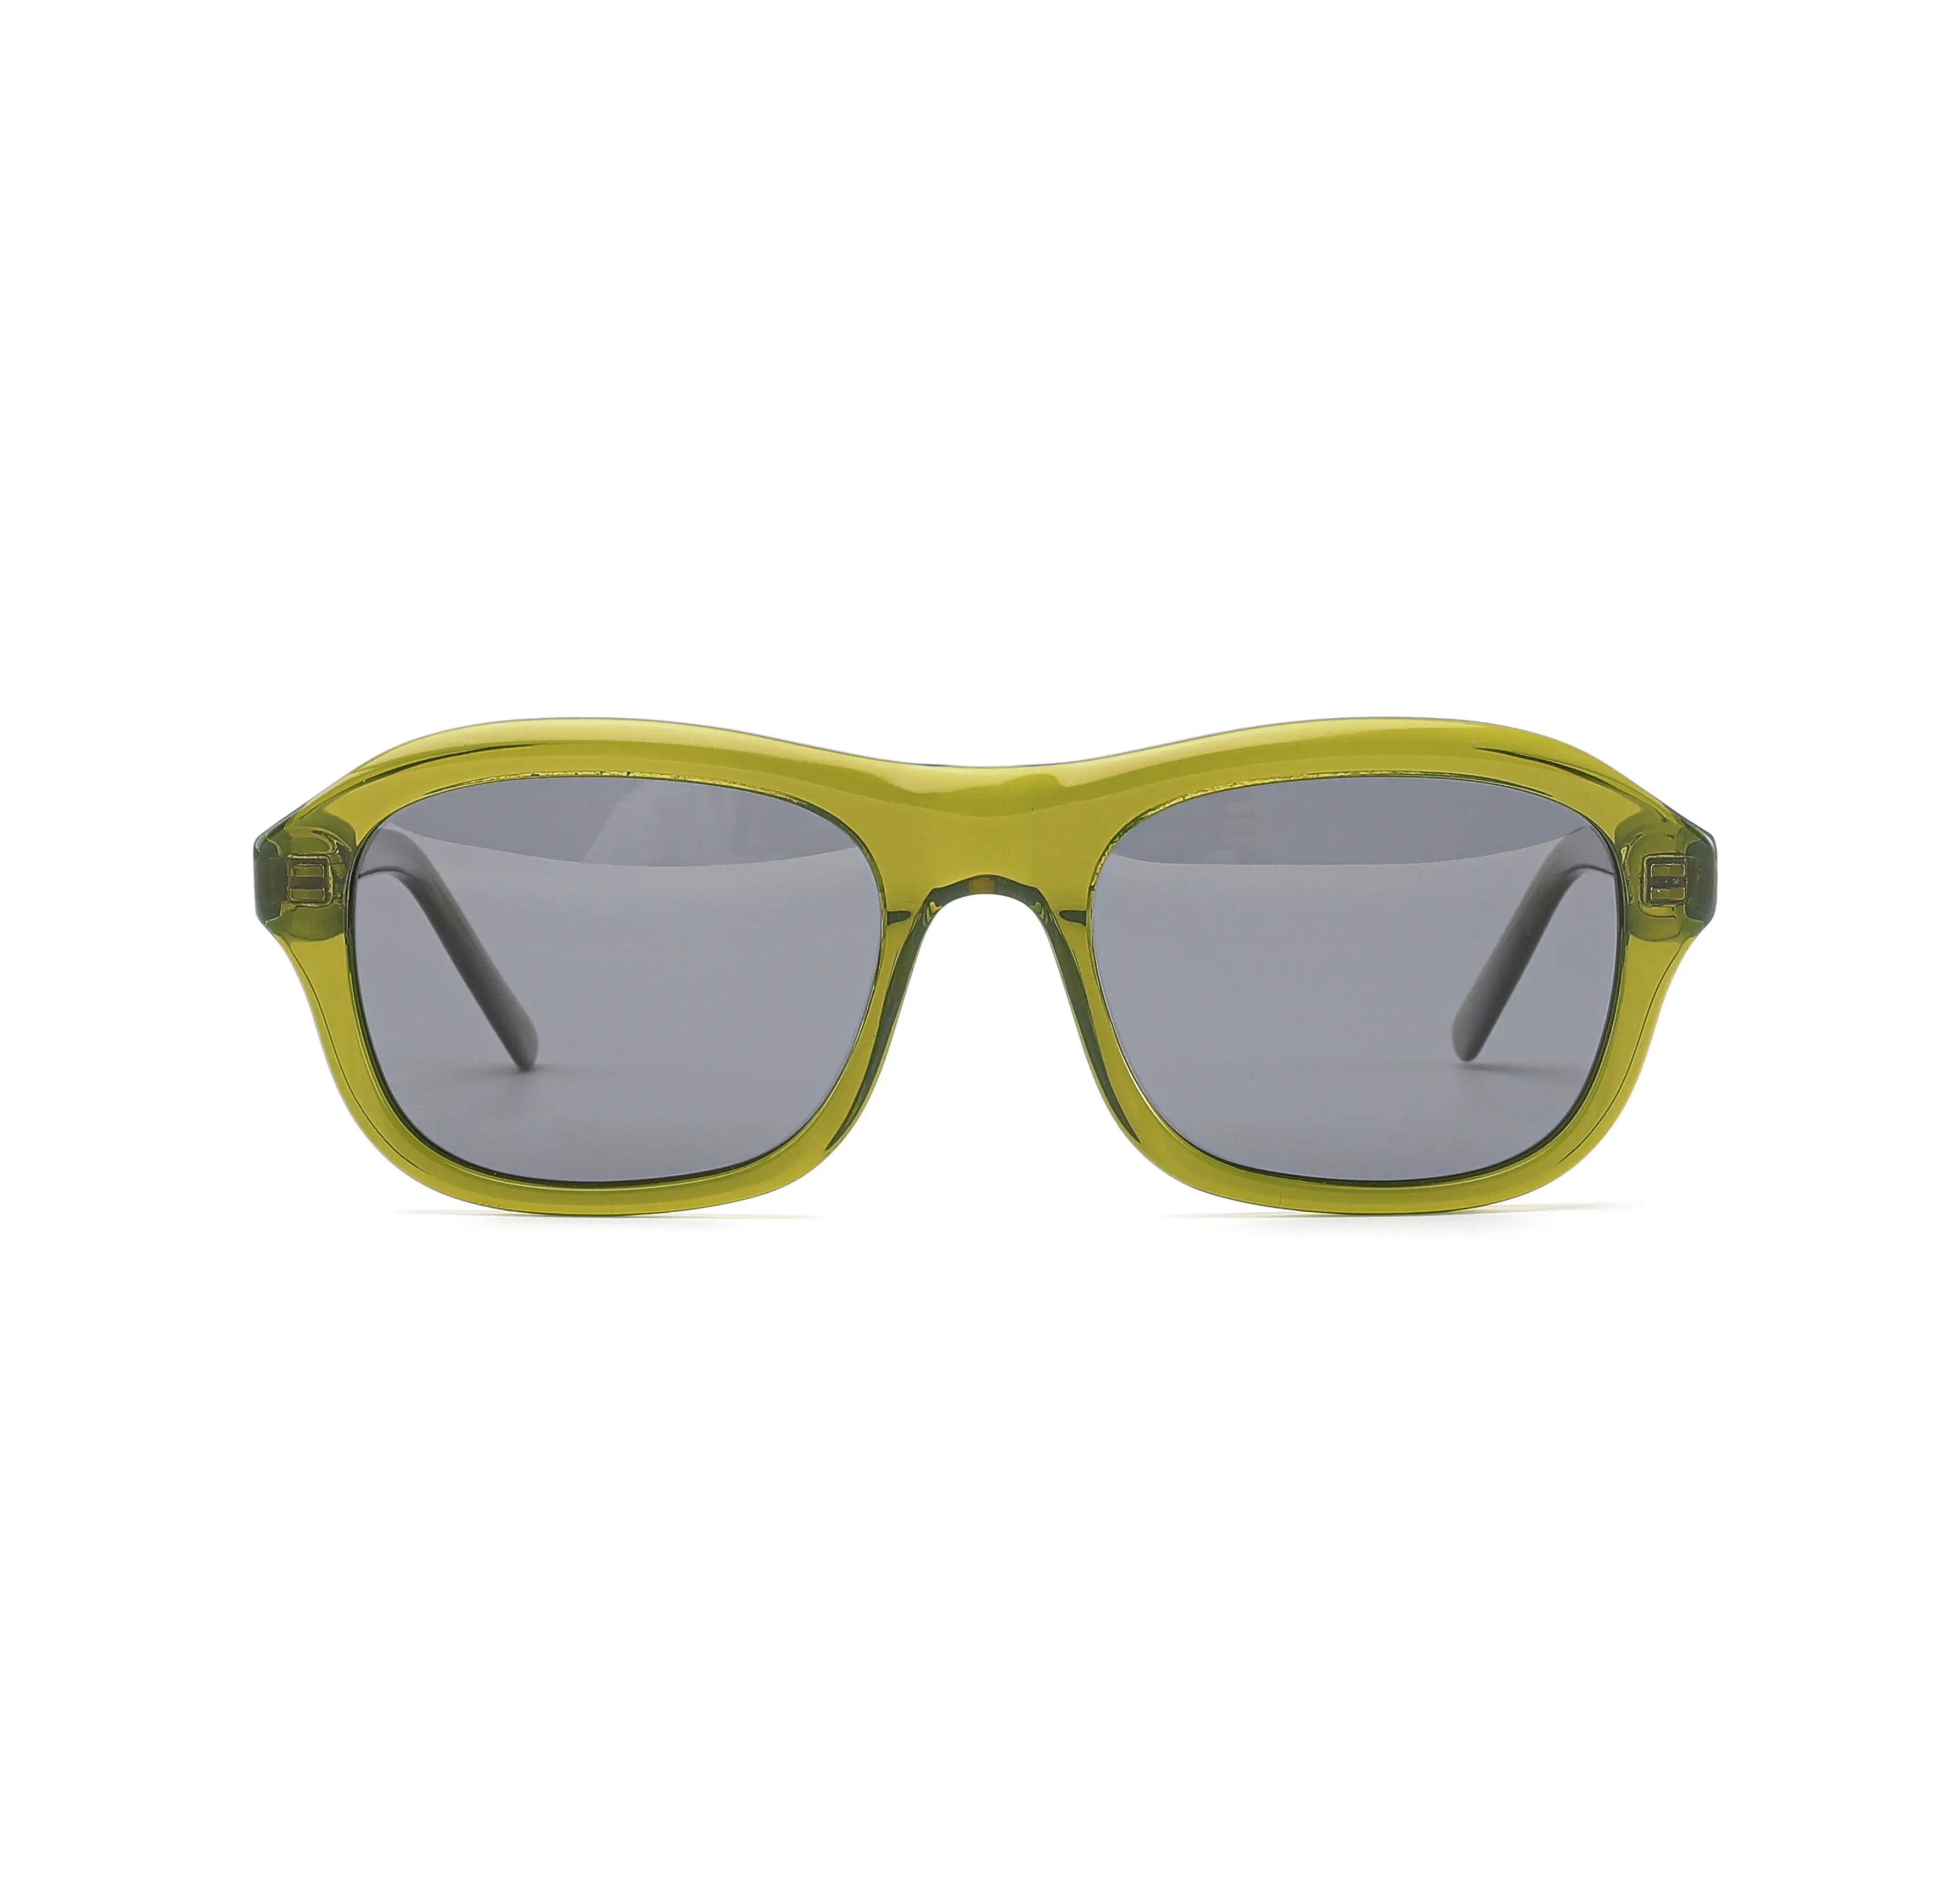 Nuevo estilo Sexy mujer anteojos UV400 polarizado personalizado gafas de sol al por mayor moda lujo gafas de sol hombres